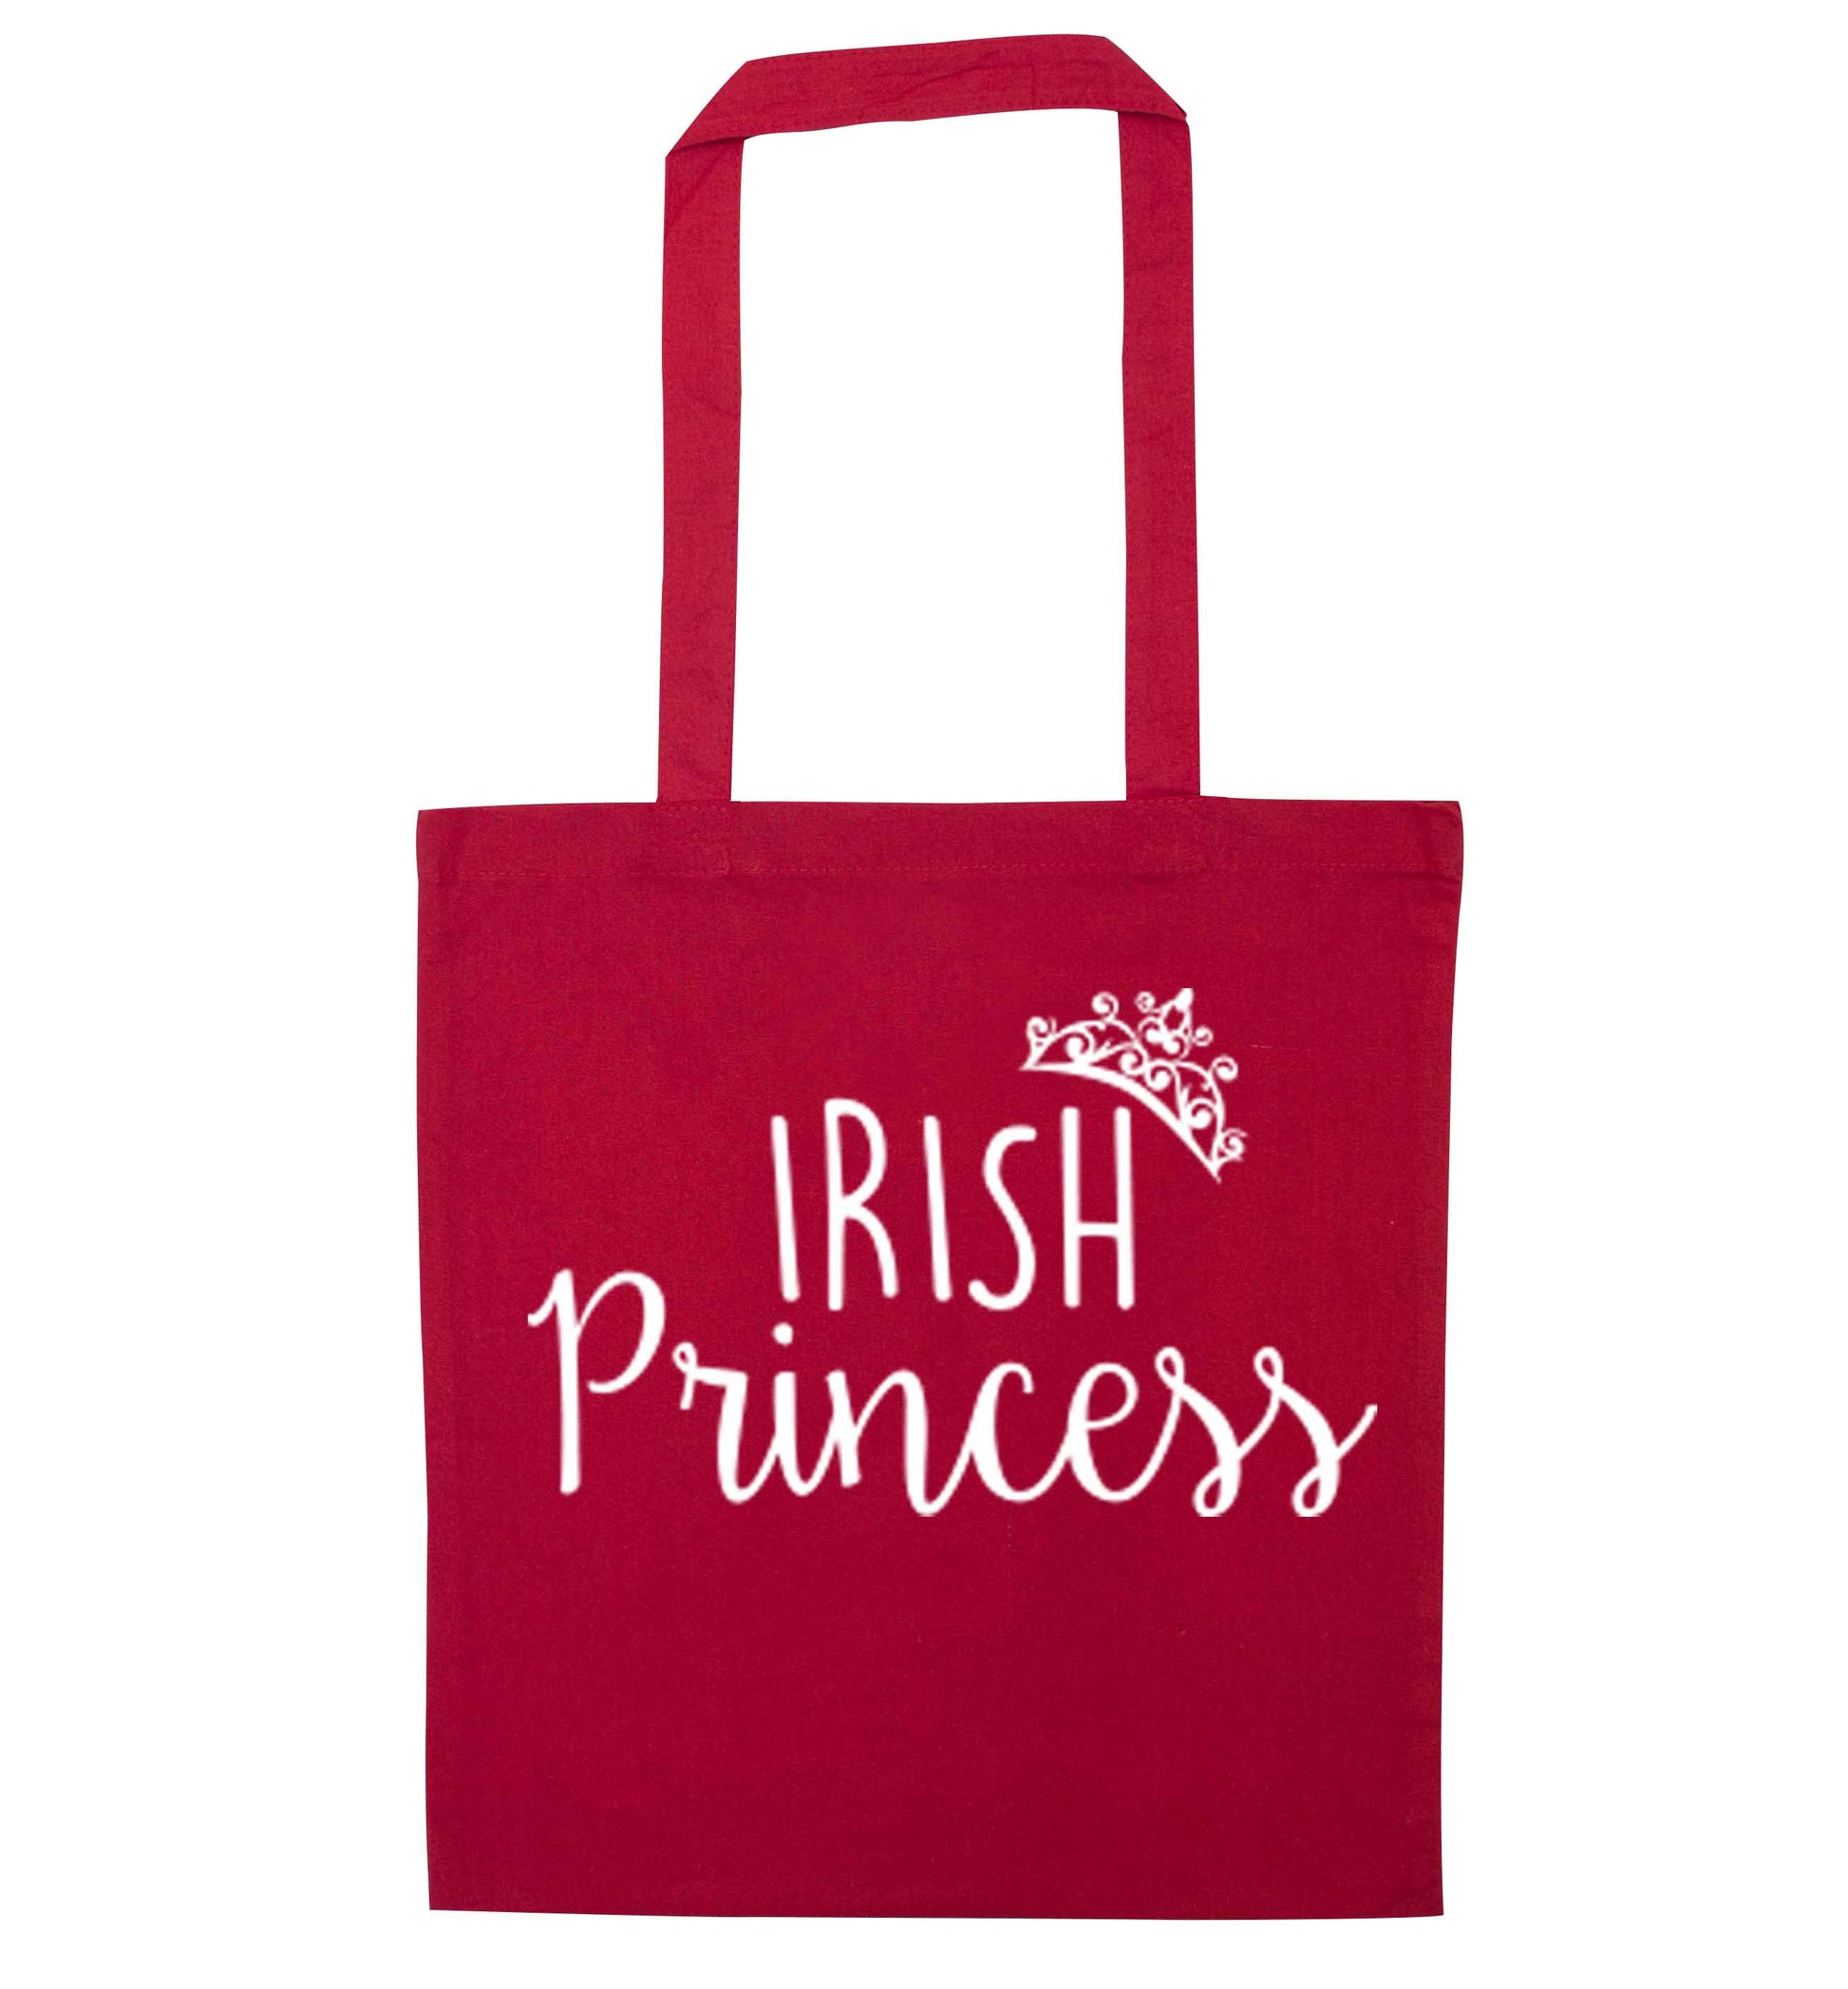 Irish princess red tote bag